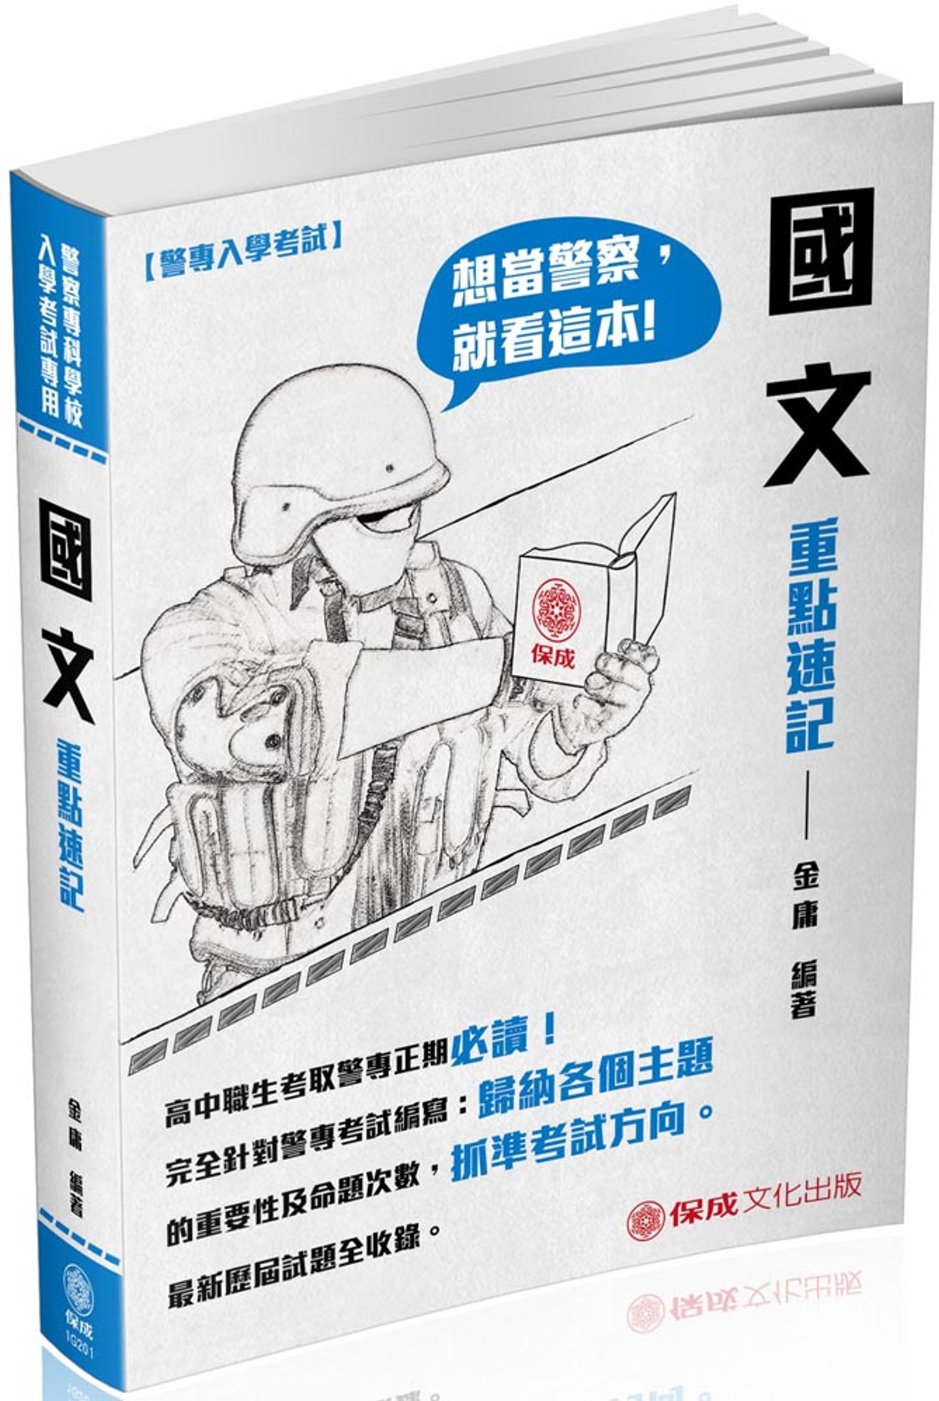 警專入學考試-國文重點速記<保成>(五版)